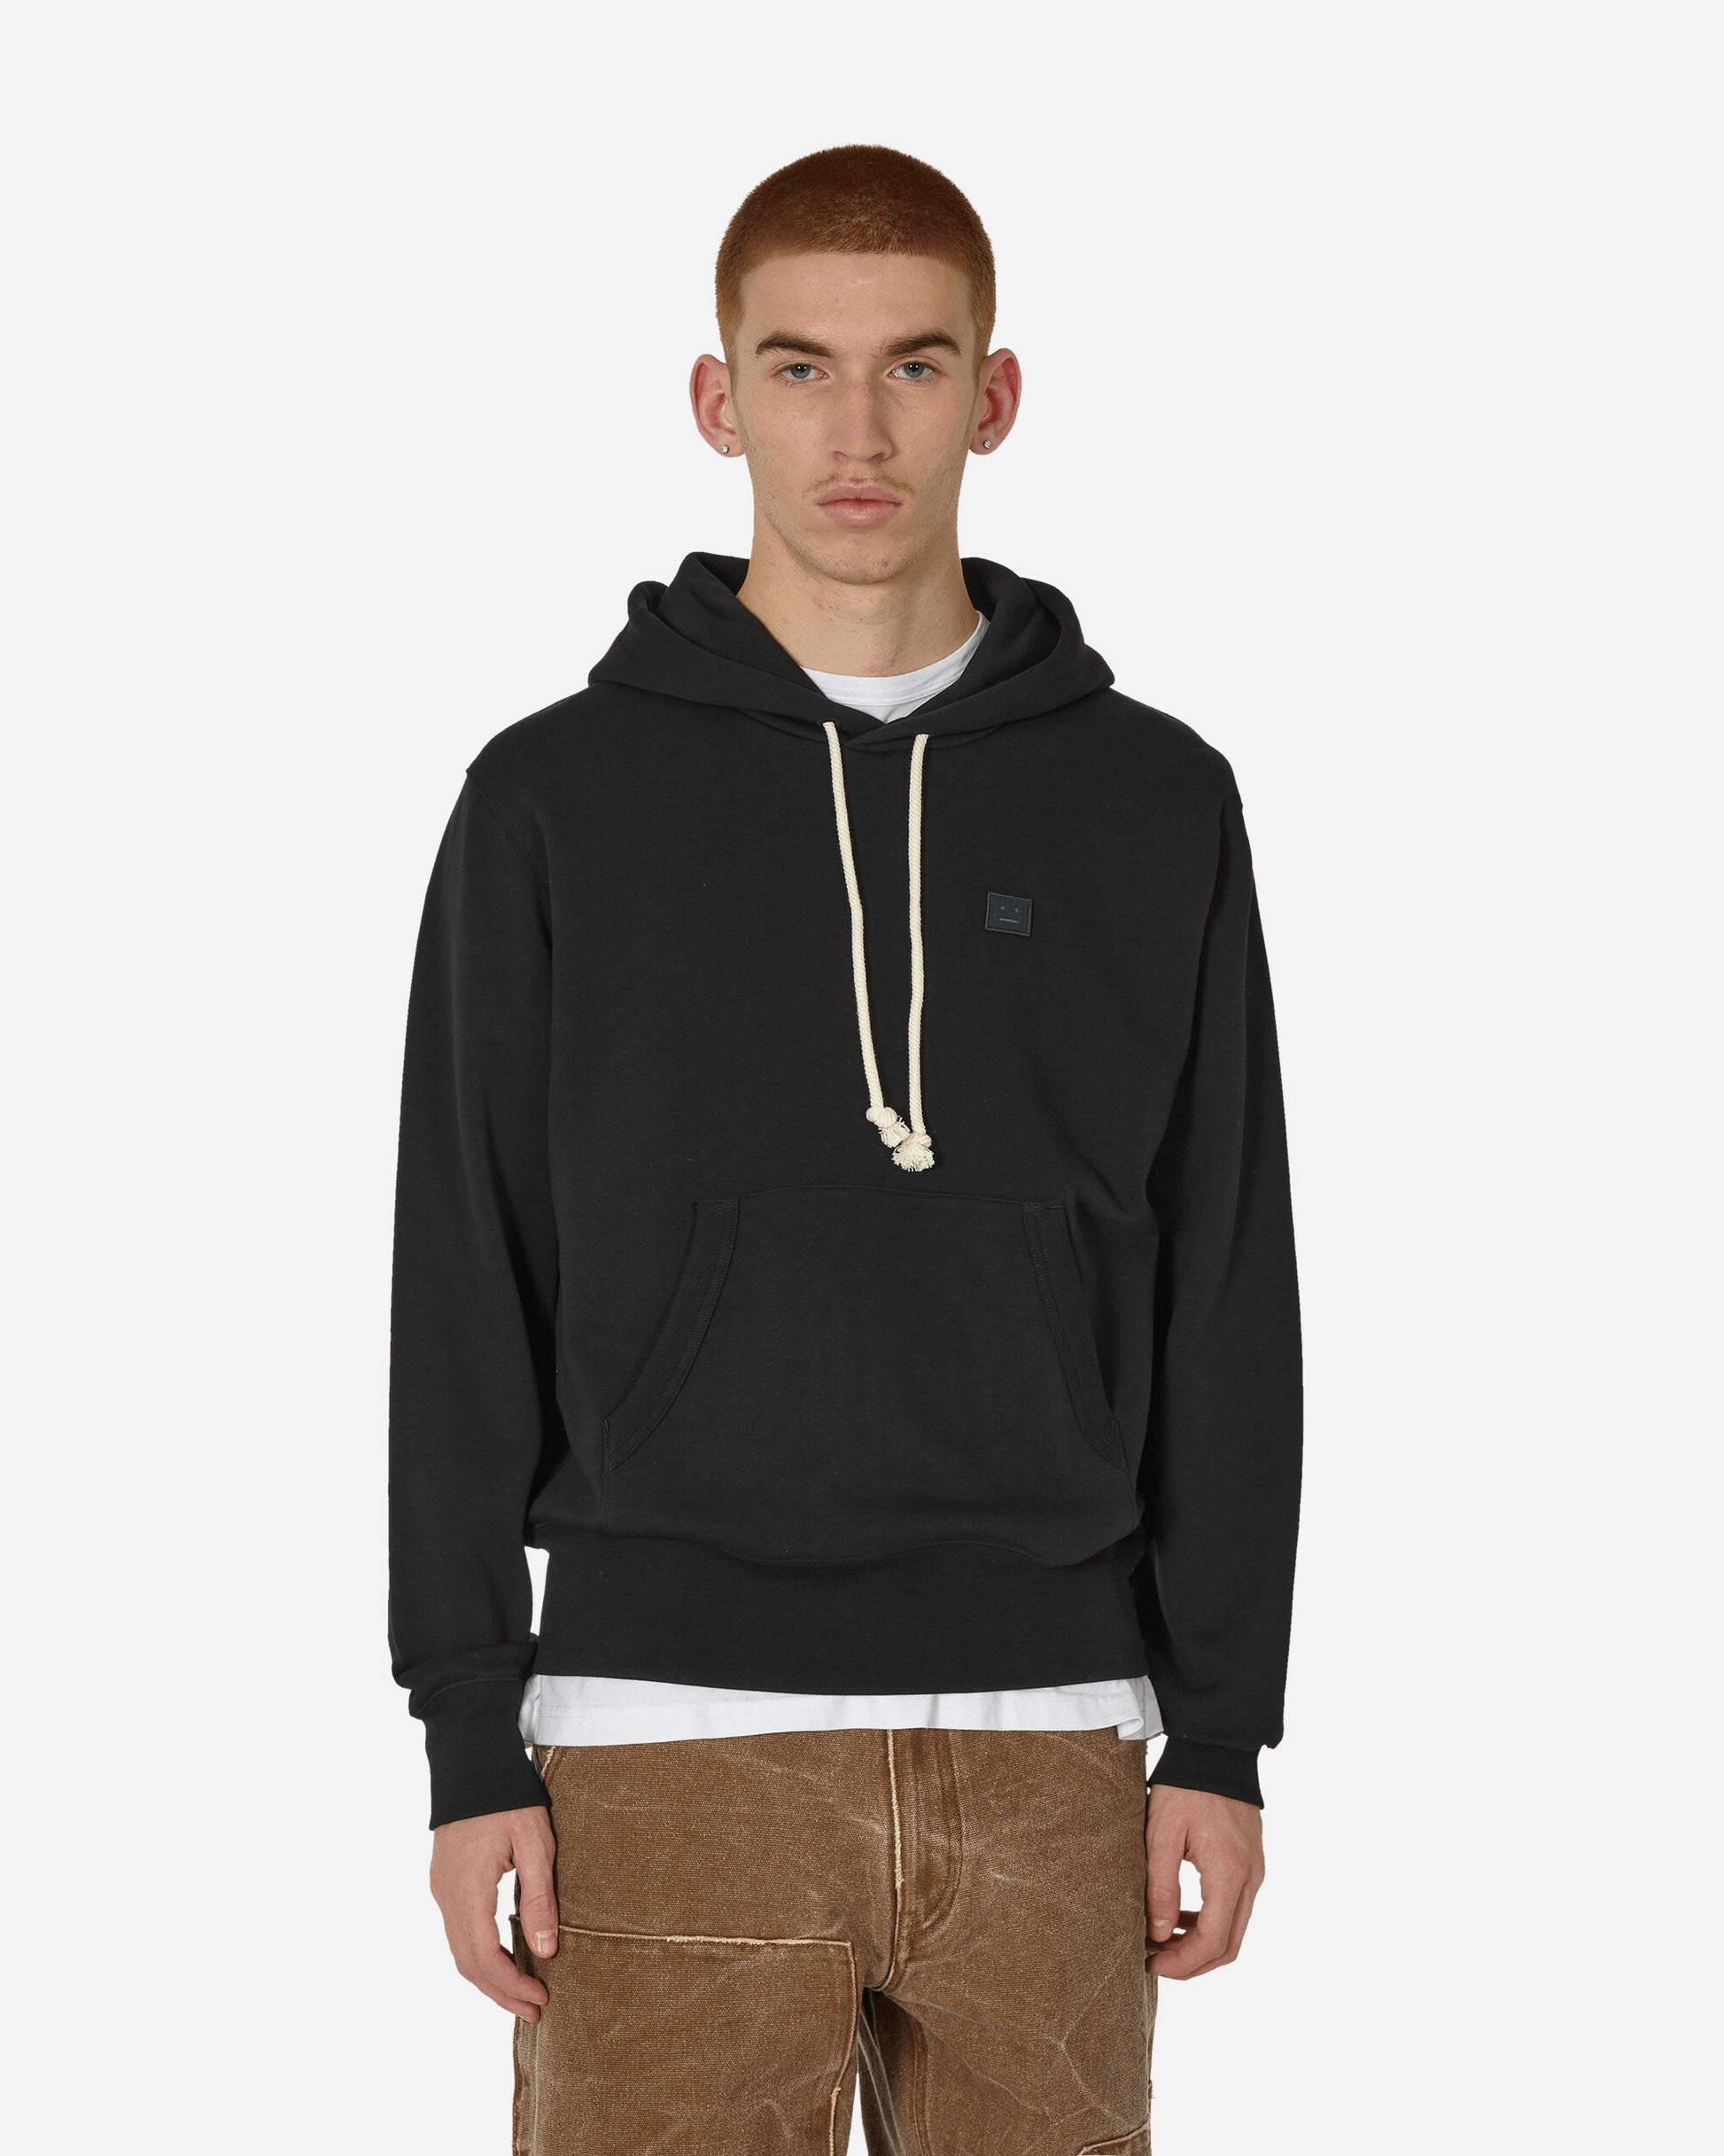 Acne Studios Hooded Black Sweatshirts Hoodies CI0141- 900